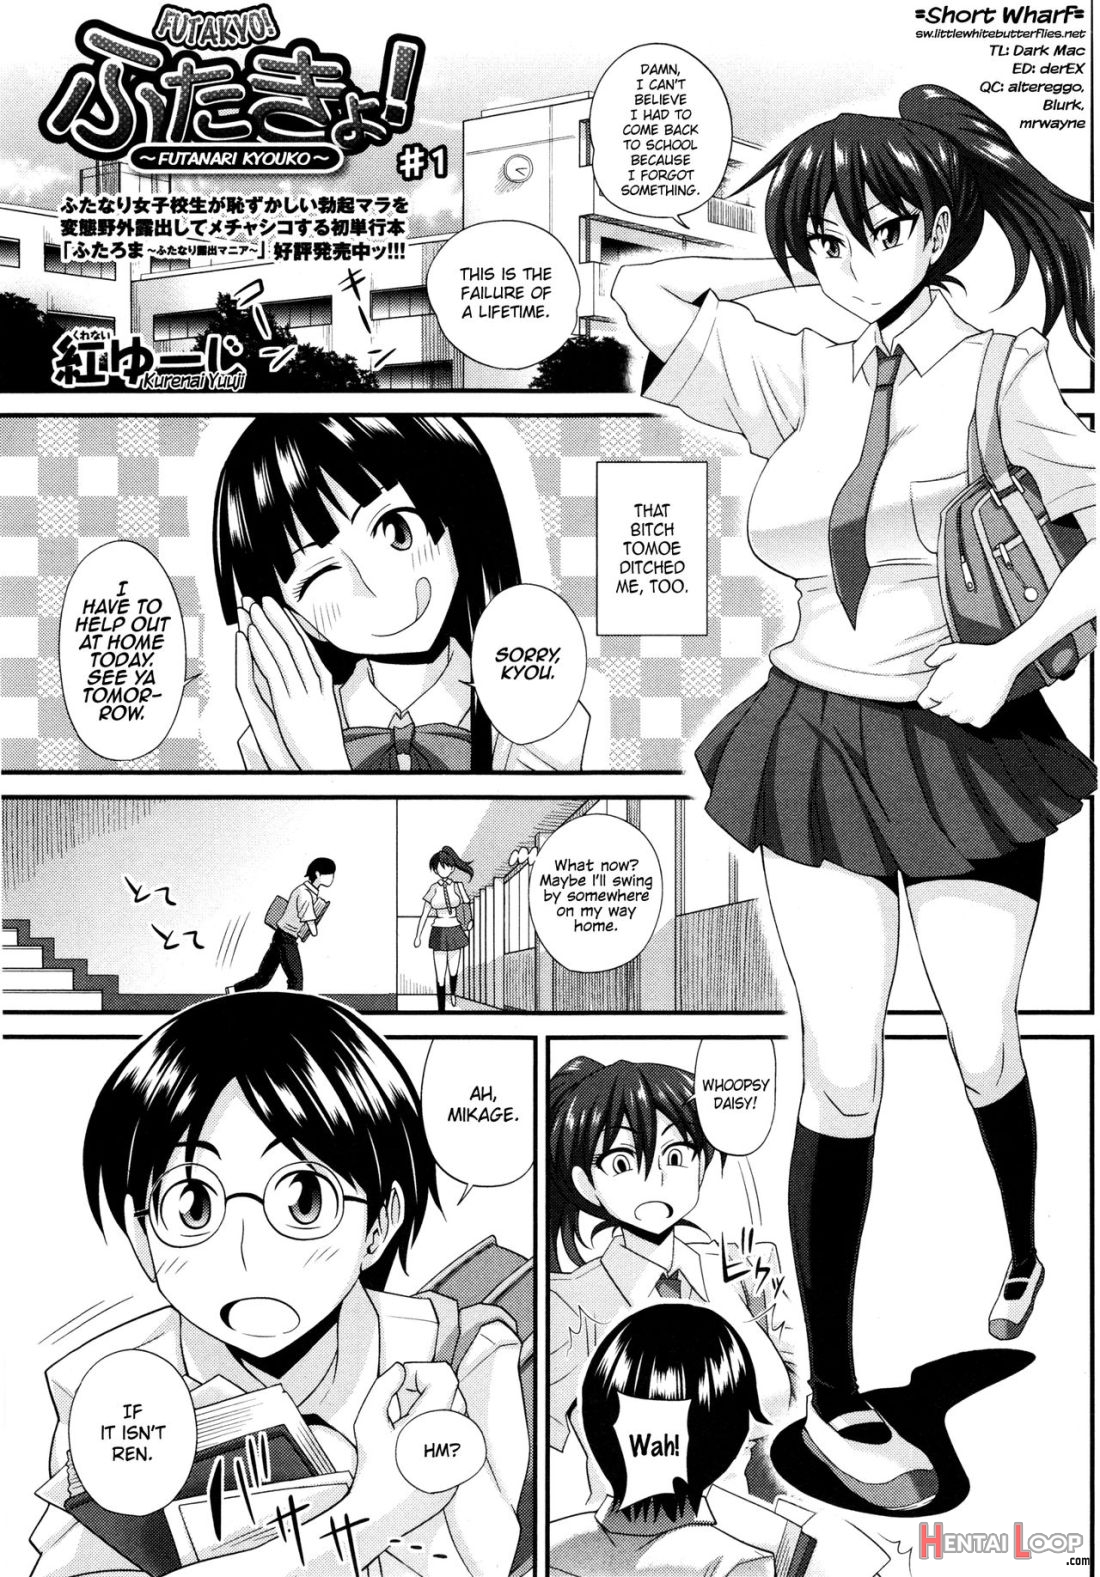 Futakyo! ~futanari Kyouko-chan~ #1 page 1